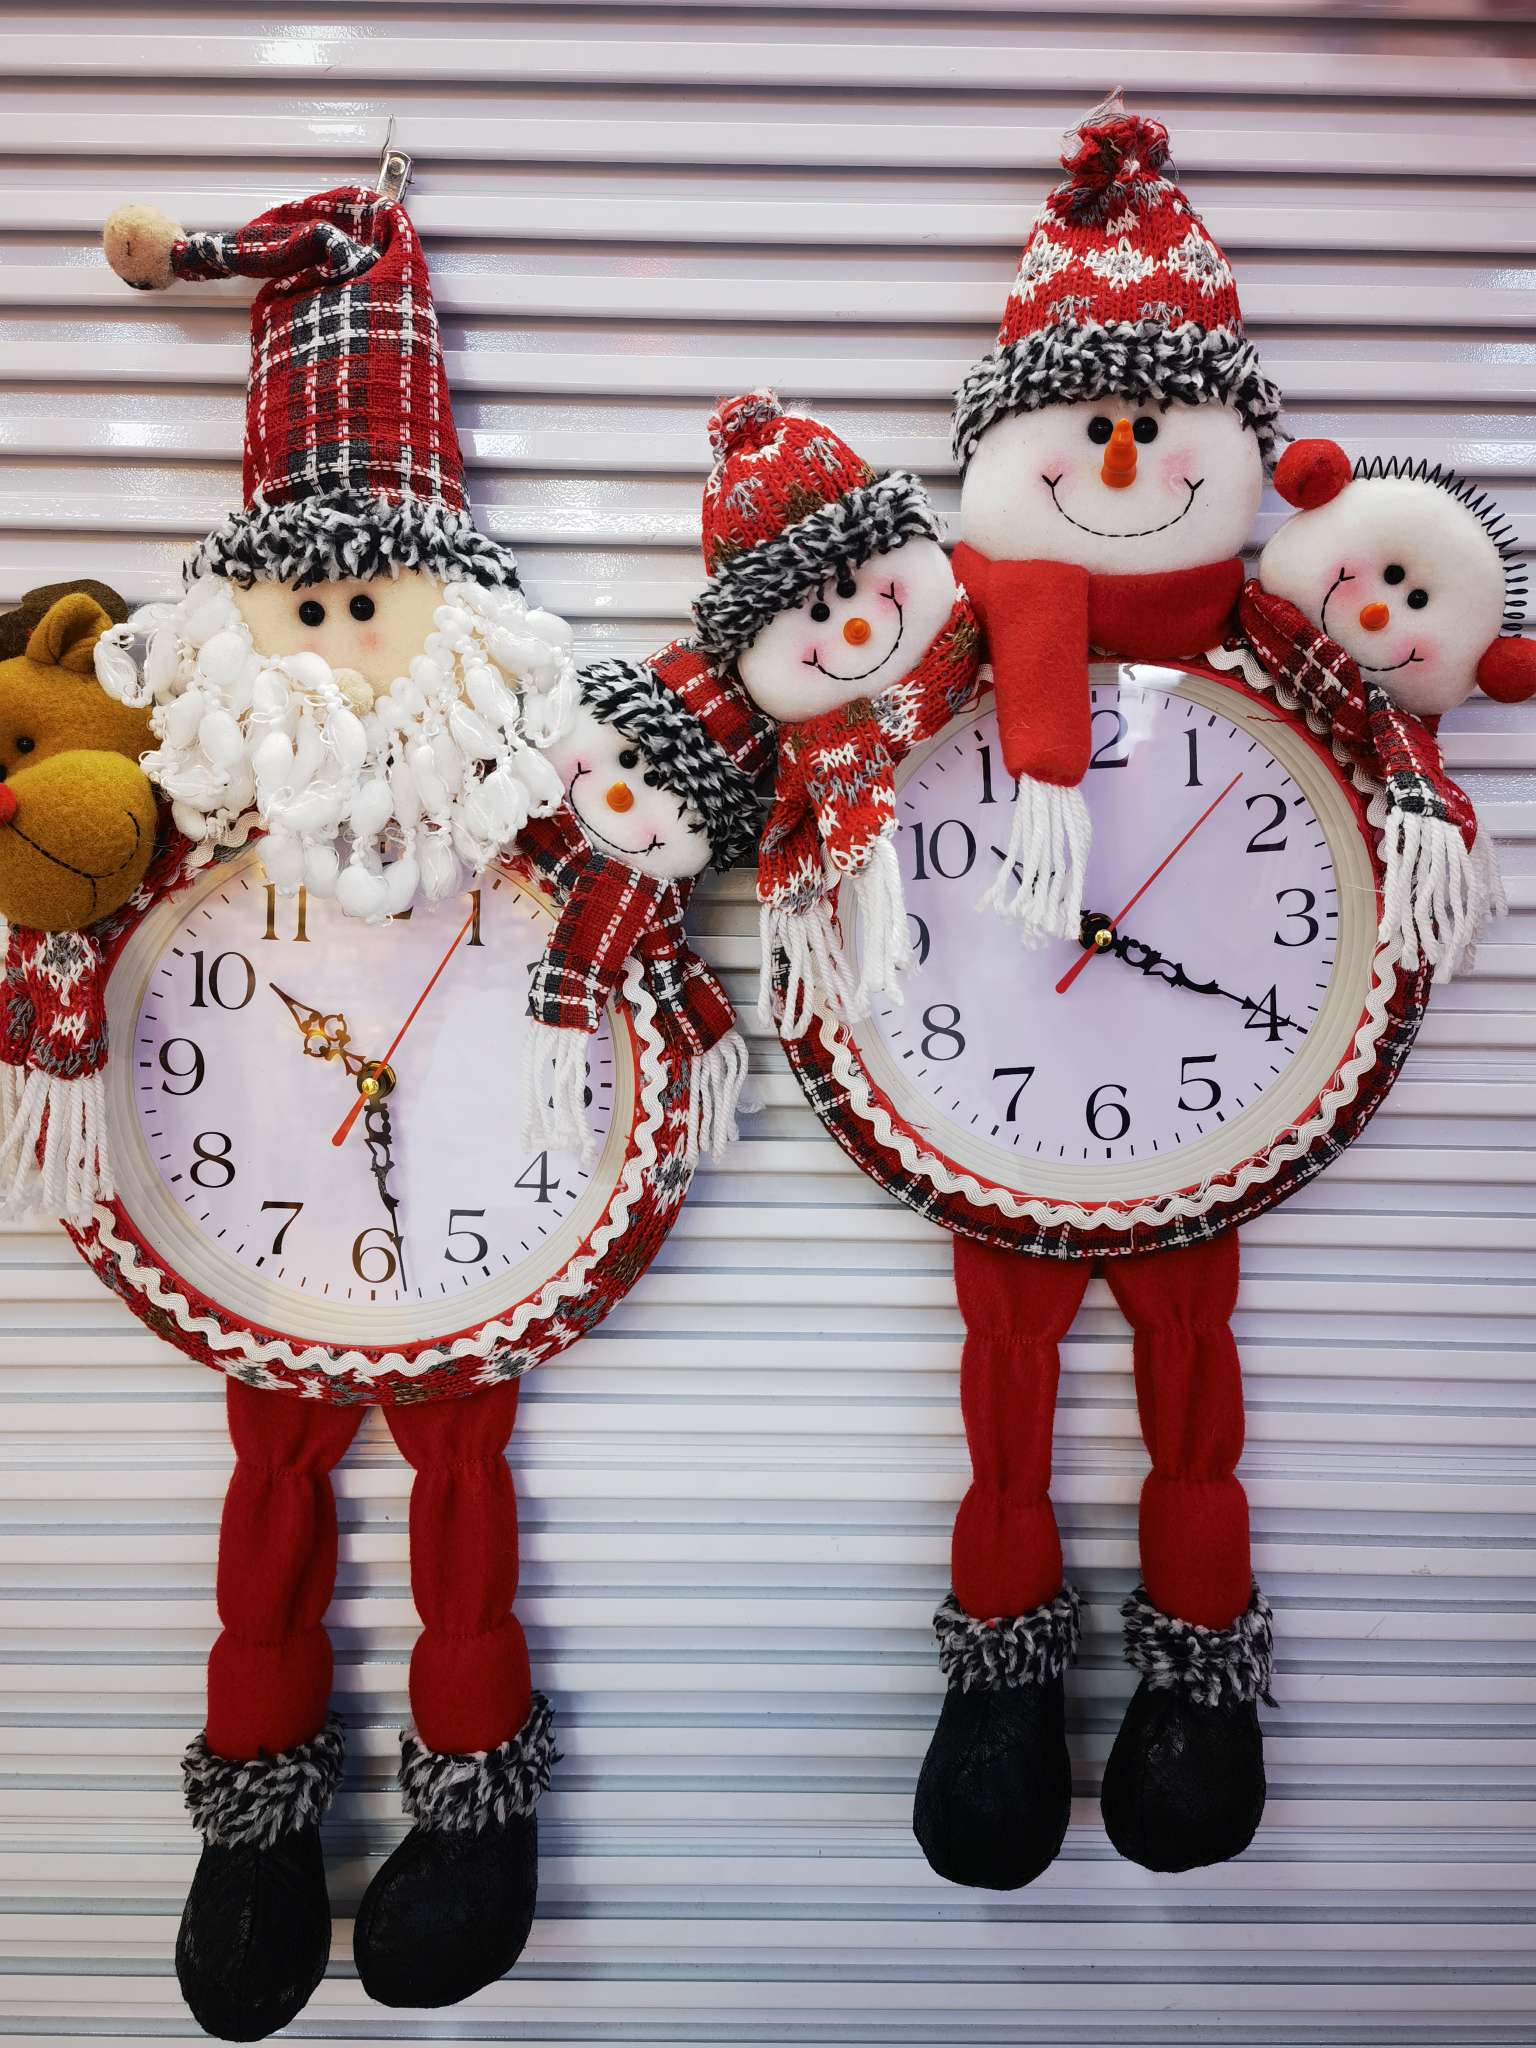 办公室文化圣诞用品一字铃铛14mm 泡沫圣诞球装饰 铃铛配件一字猫眼铃铛 独特设计增添节日气氛